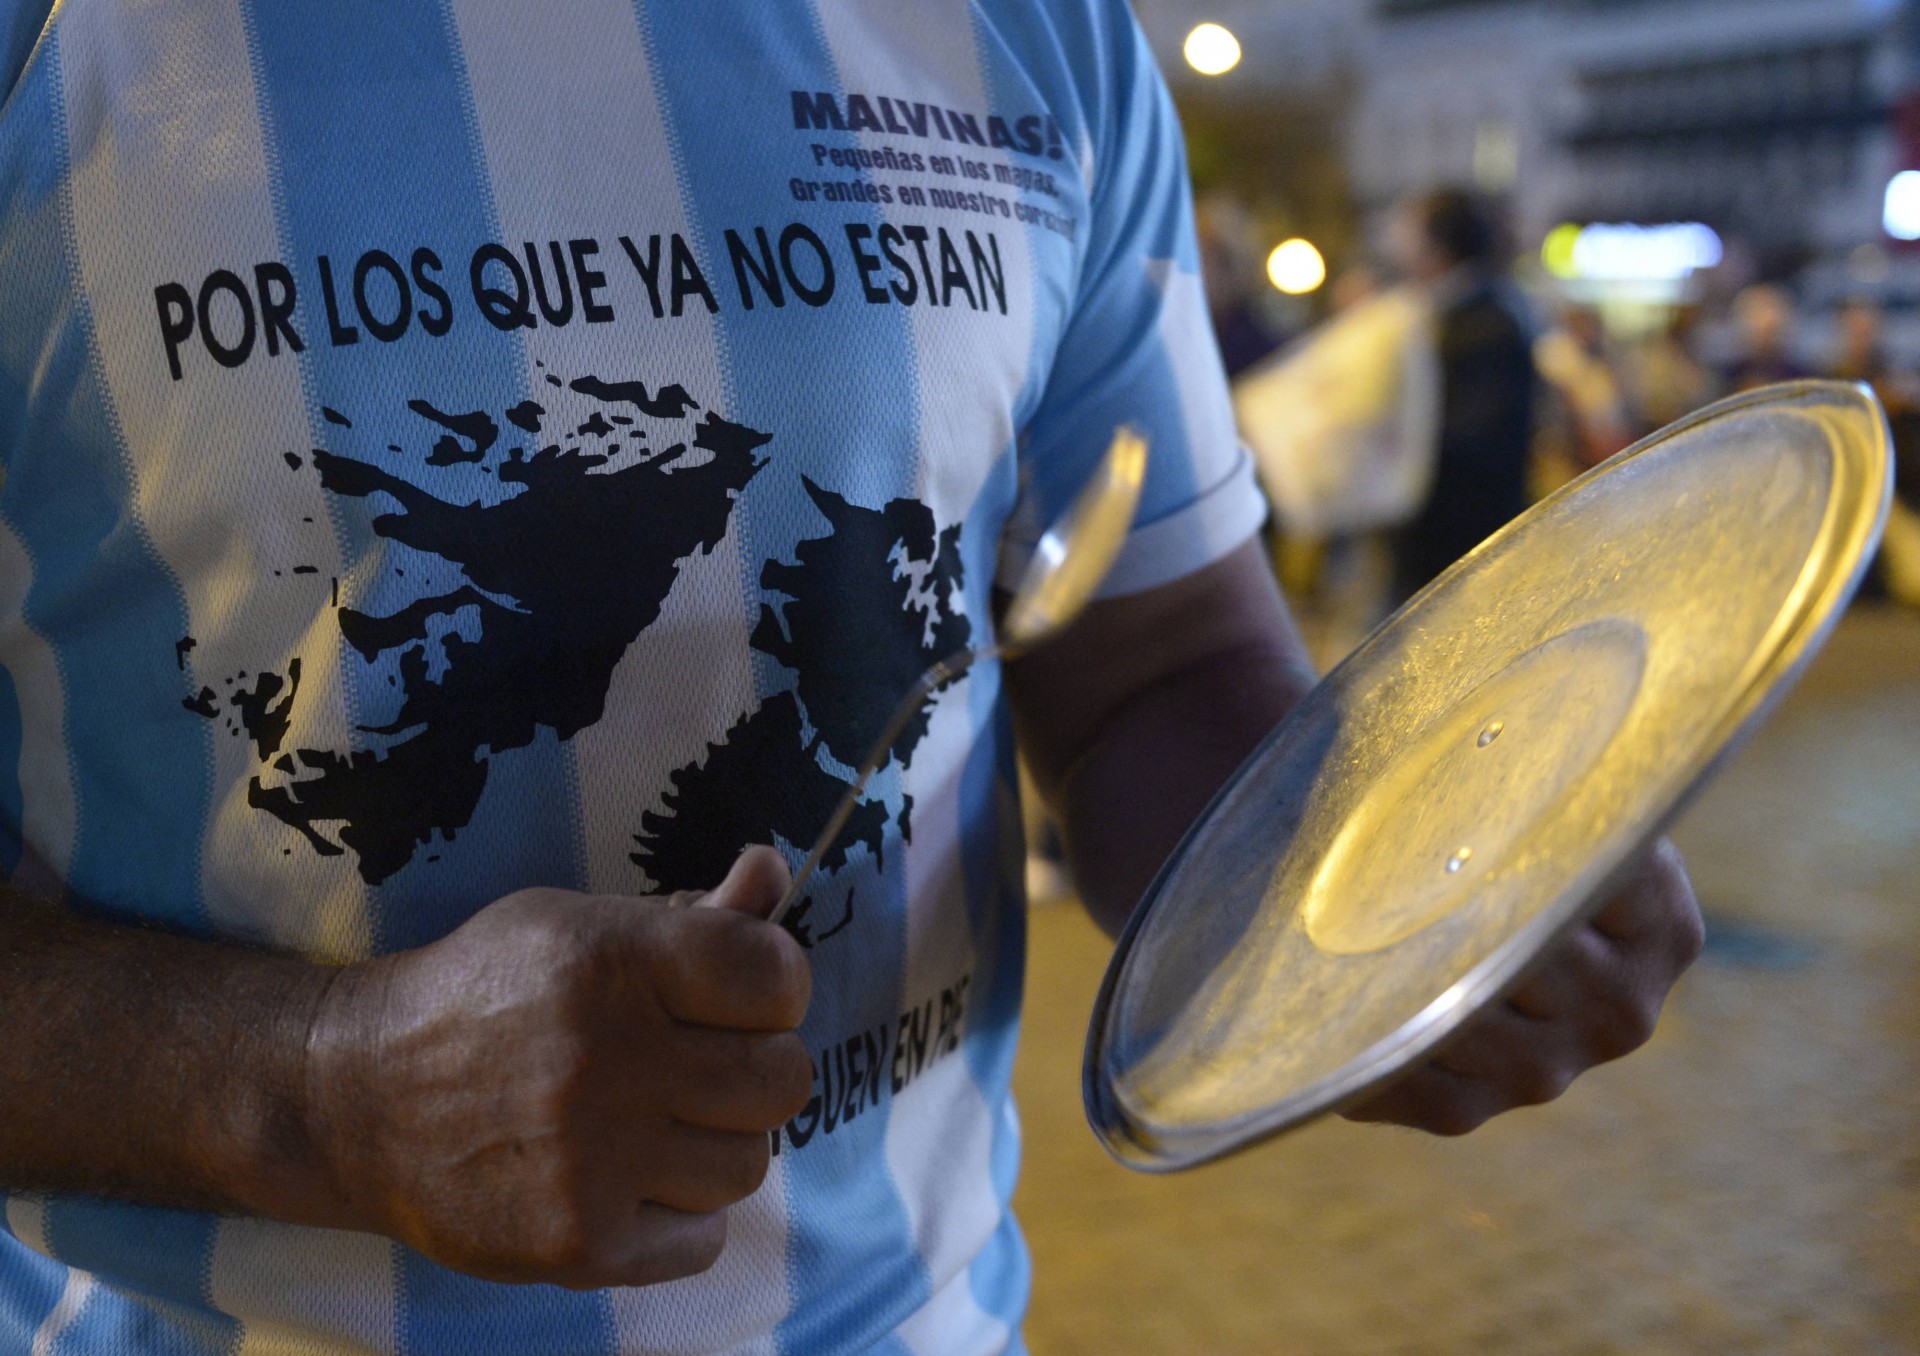 Nesta foto de arquivo tirada em 18 de abril de 2013, um homem vestindo uma camiseta com o mapa das Ilhas Malvinas lendo "Para aqueles que não estão aqui", bate uma panela durante um protesto contra o governo da presidente argentina Cristina Fernández de Kirchner em Buenos Aires(Foto: JUAN MABROMATA / AFP)